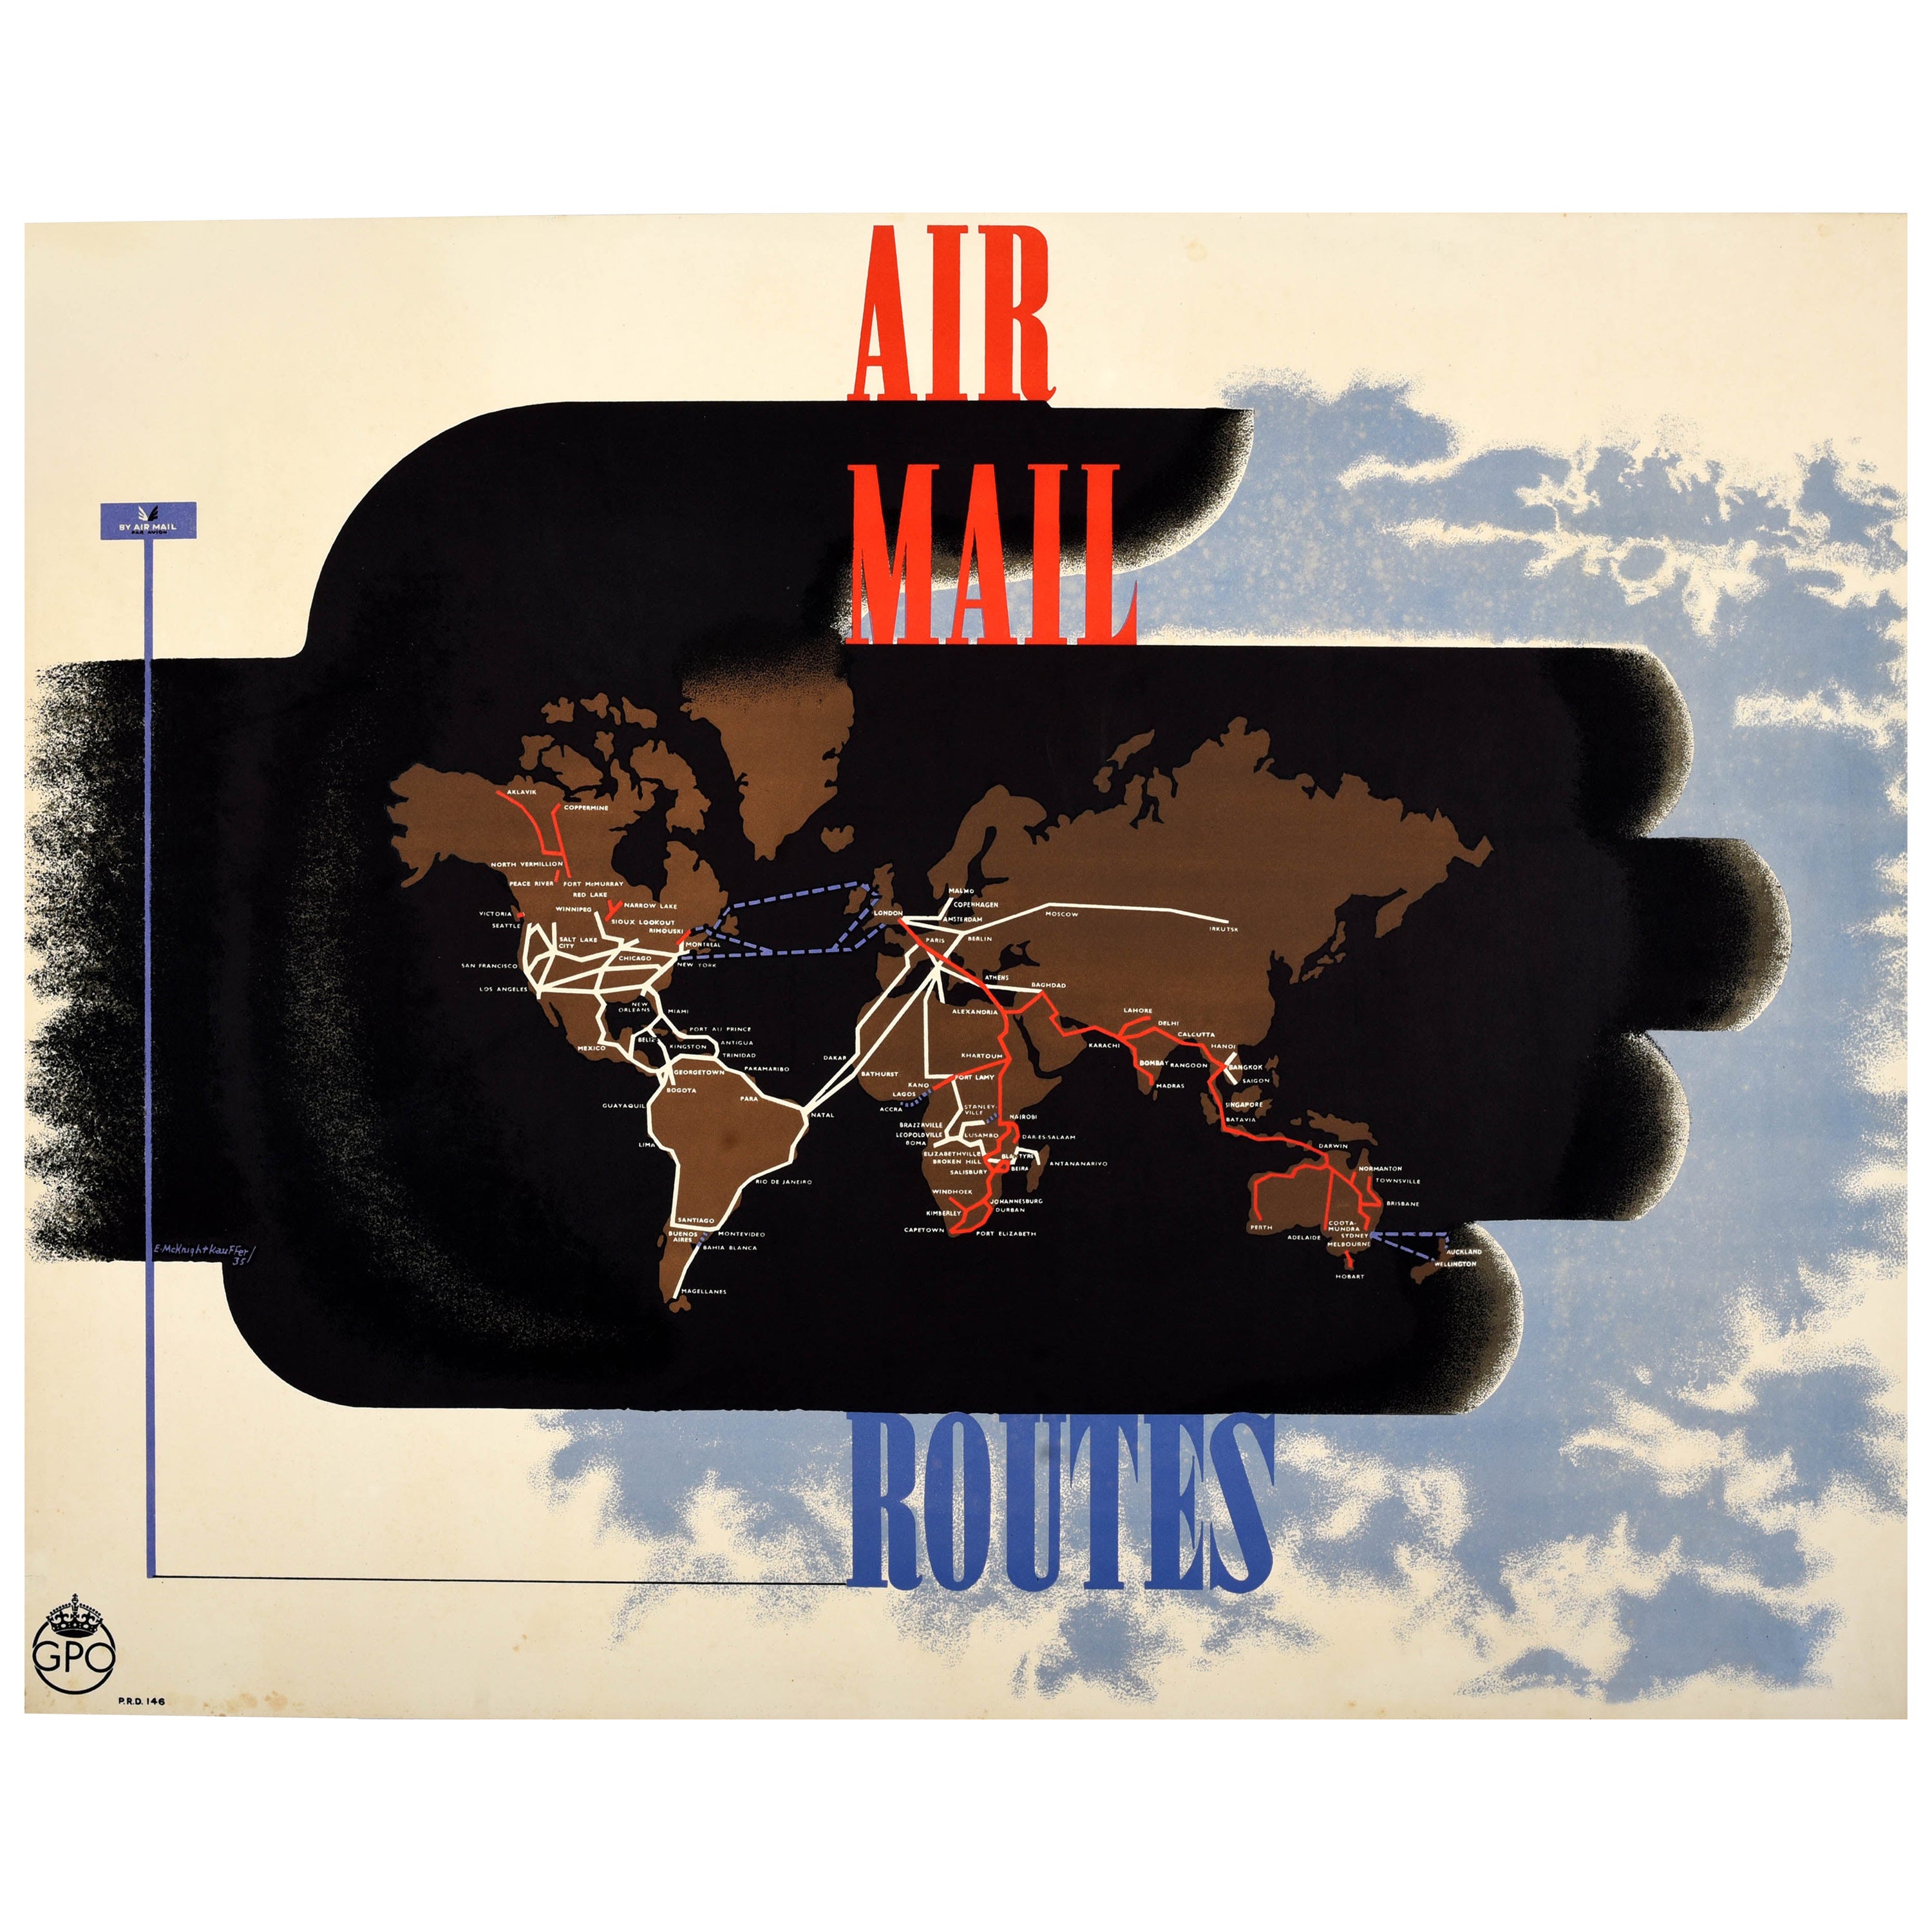 Seltenes Original-Vintage-Werbeplakat Air Mail Routes GPO Mcknight Kauffer, GPO im Angebot